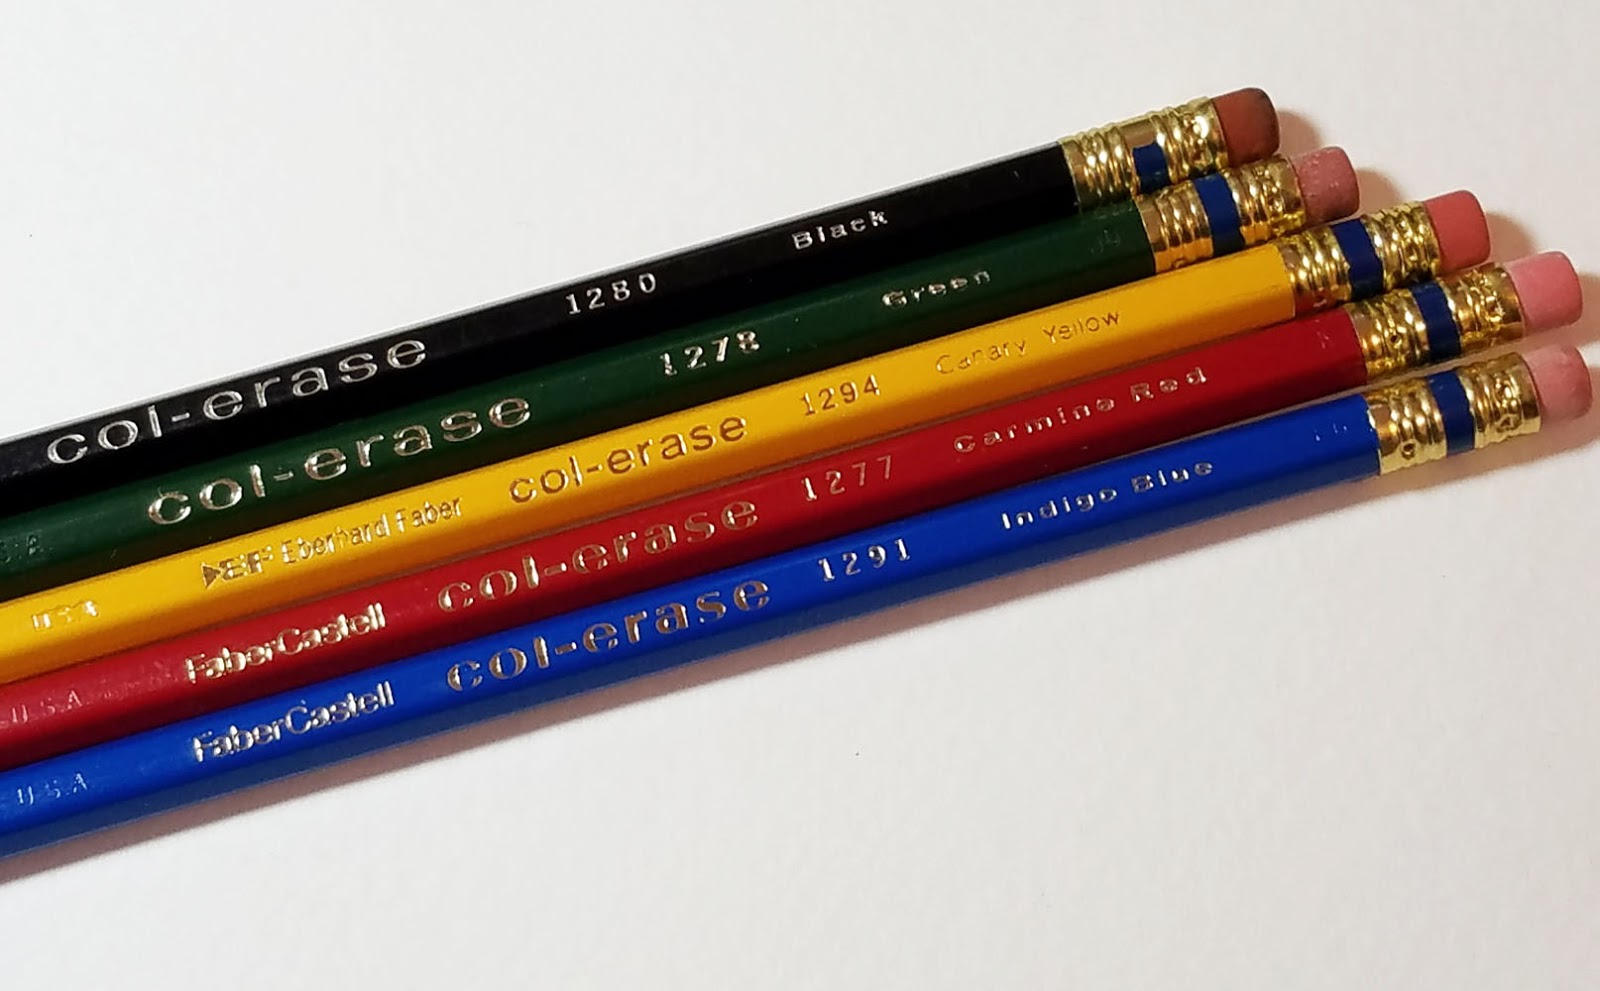 Prismacolor Col-Erase Pencil with Eraser, 0.7 mm, 2B (#1), Scarlet Red  Lead, Scarlet Red Barrel, Dozen (20066)